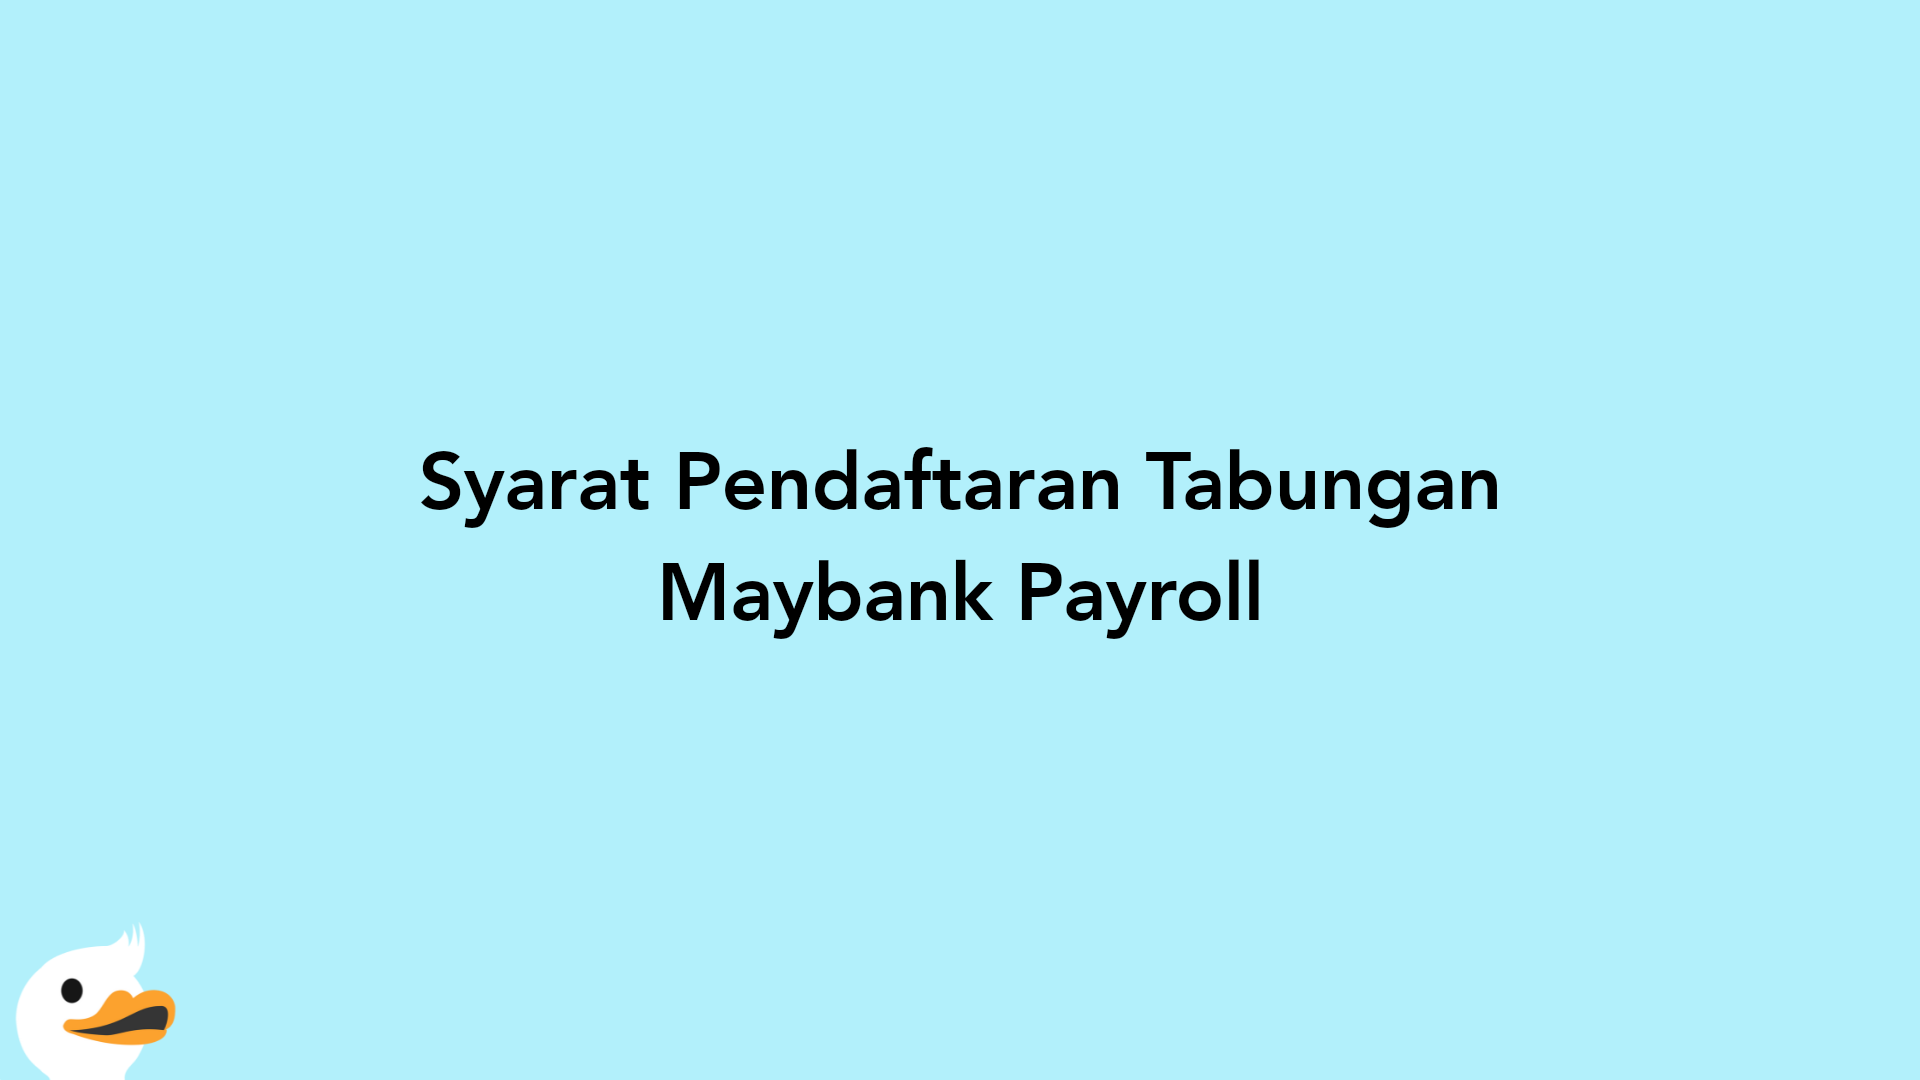 Syarat Pendaftaran Tabungan Maybank Payroll